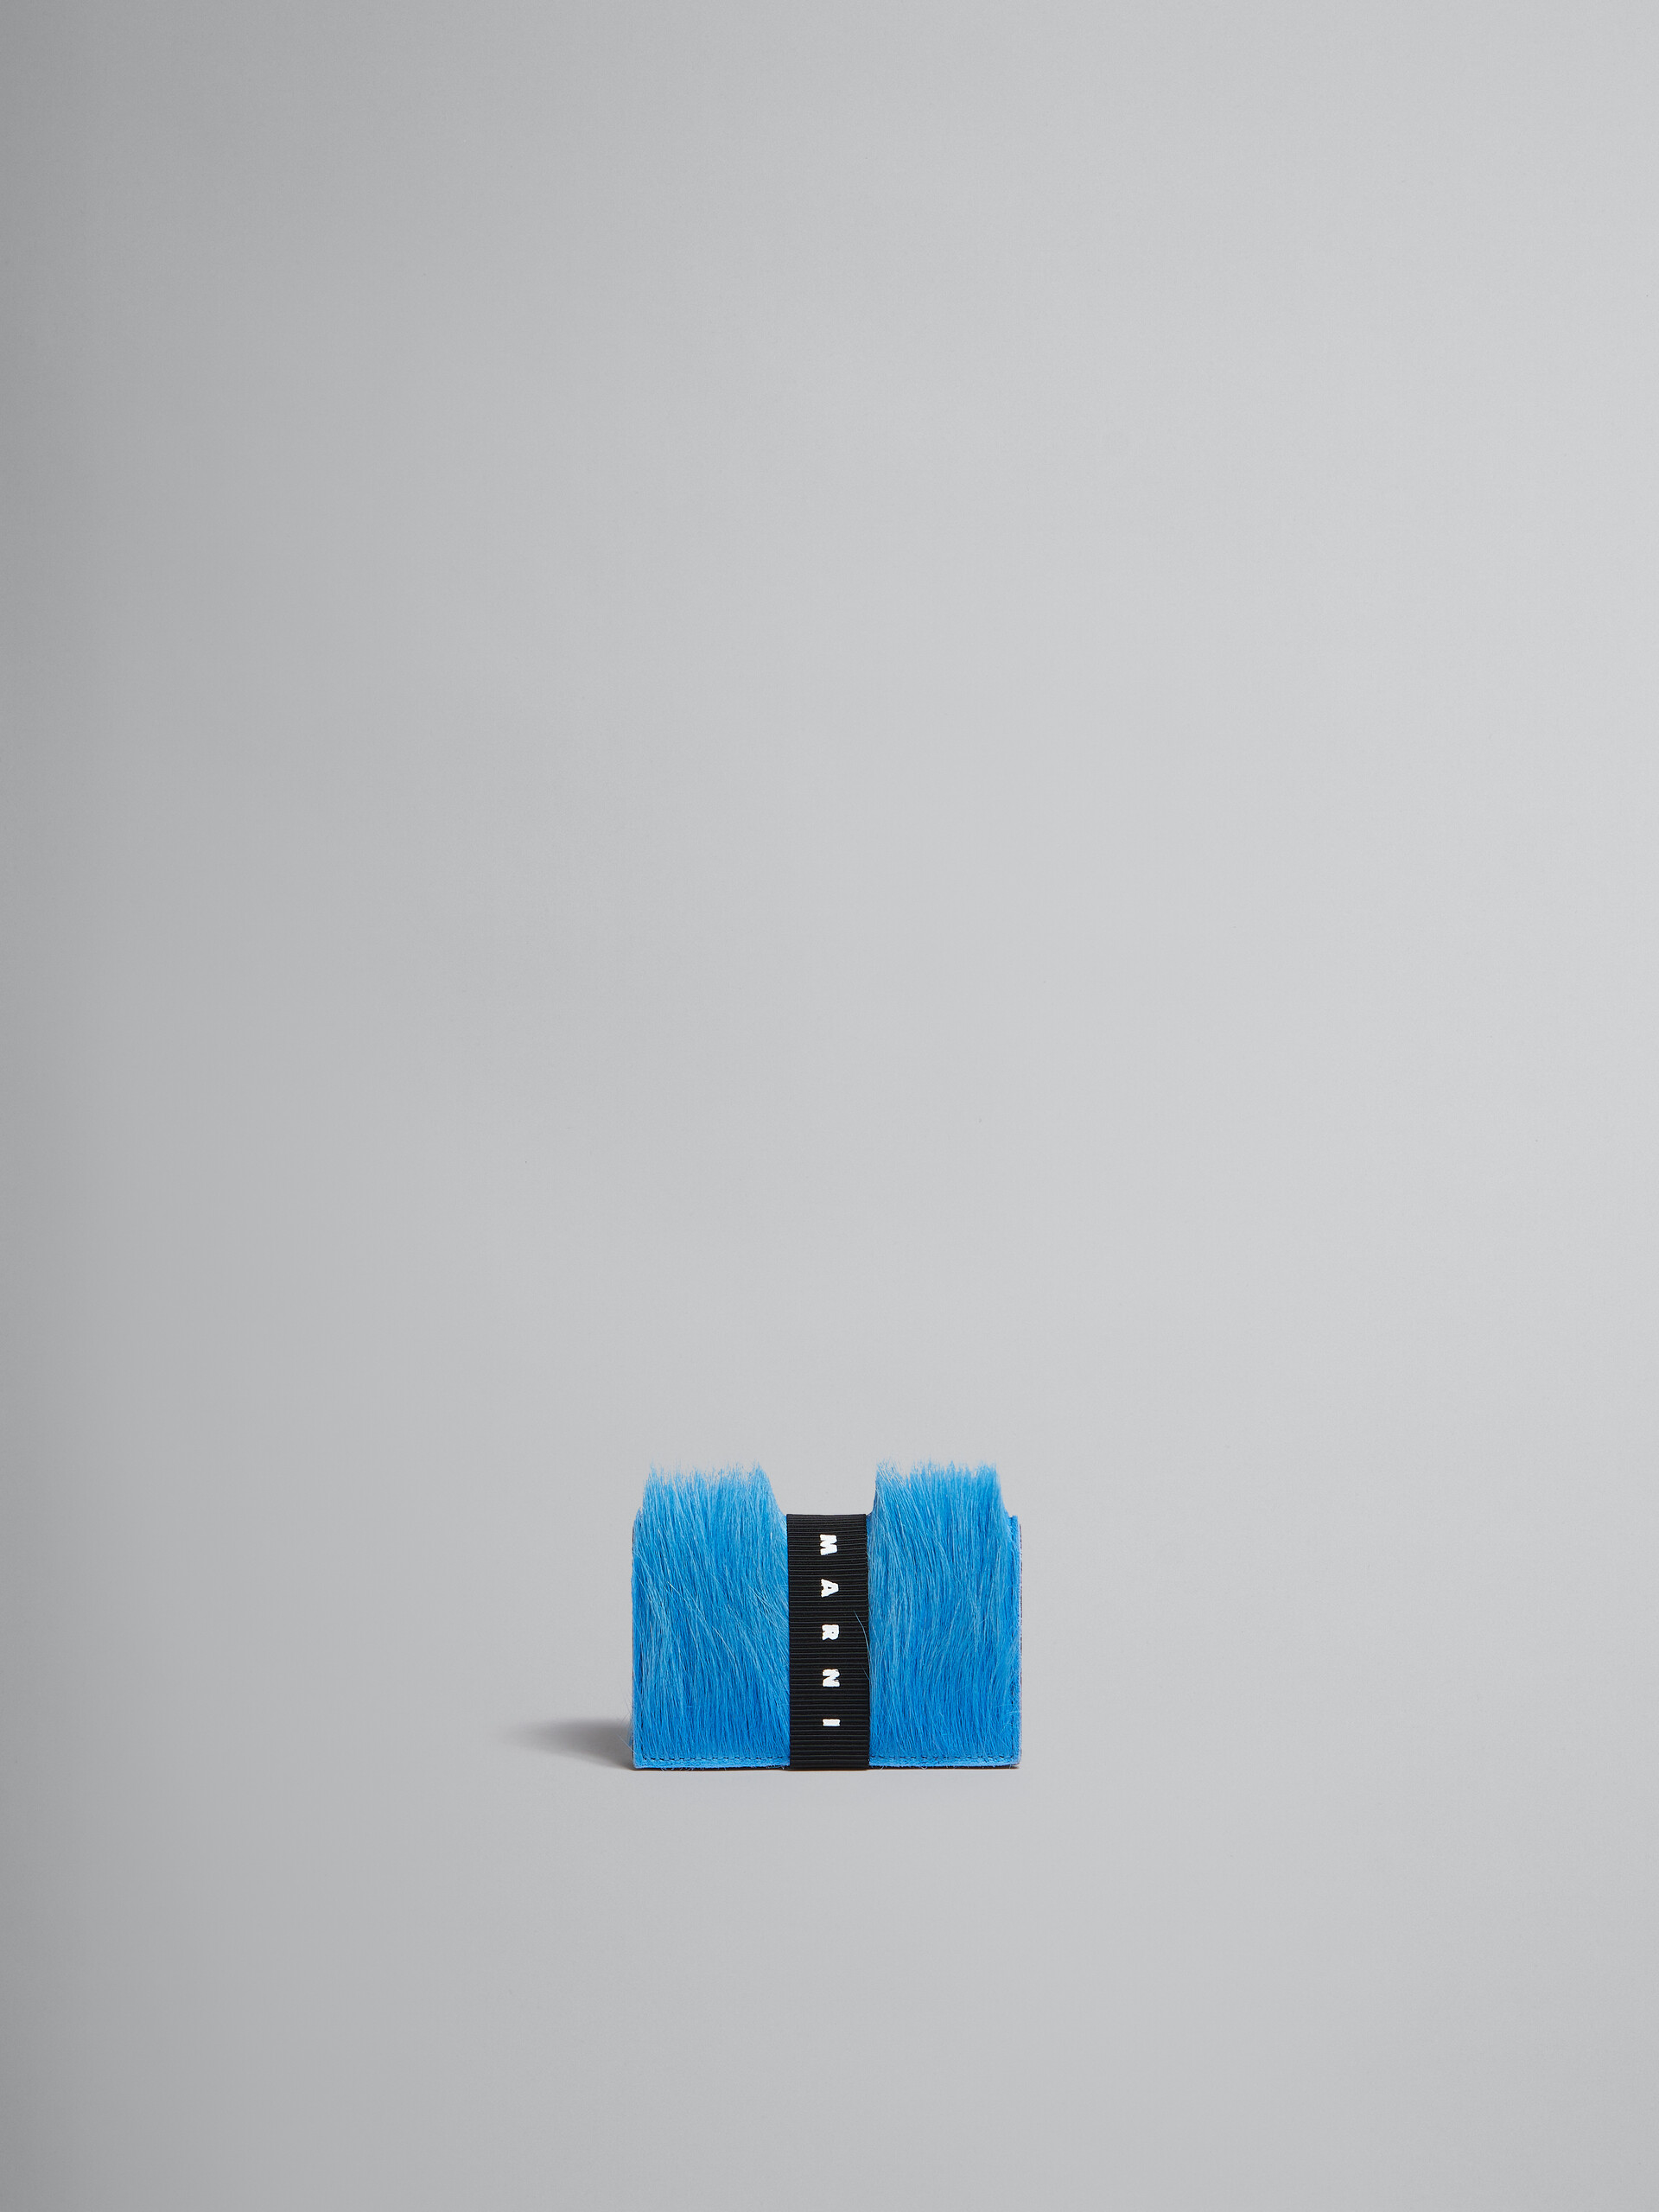 ブルー ロングヘアーカーフスキン製 三つ折りウォレット、ロゴストラップ付き - 財布 - Image 1